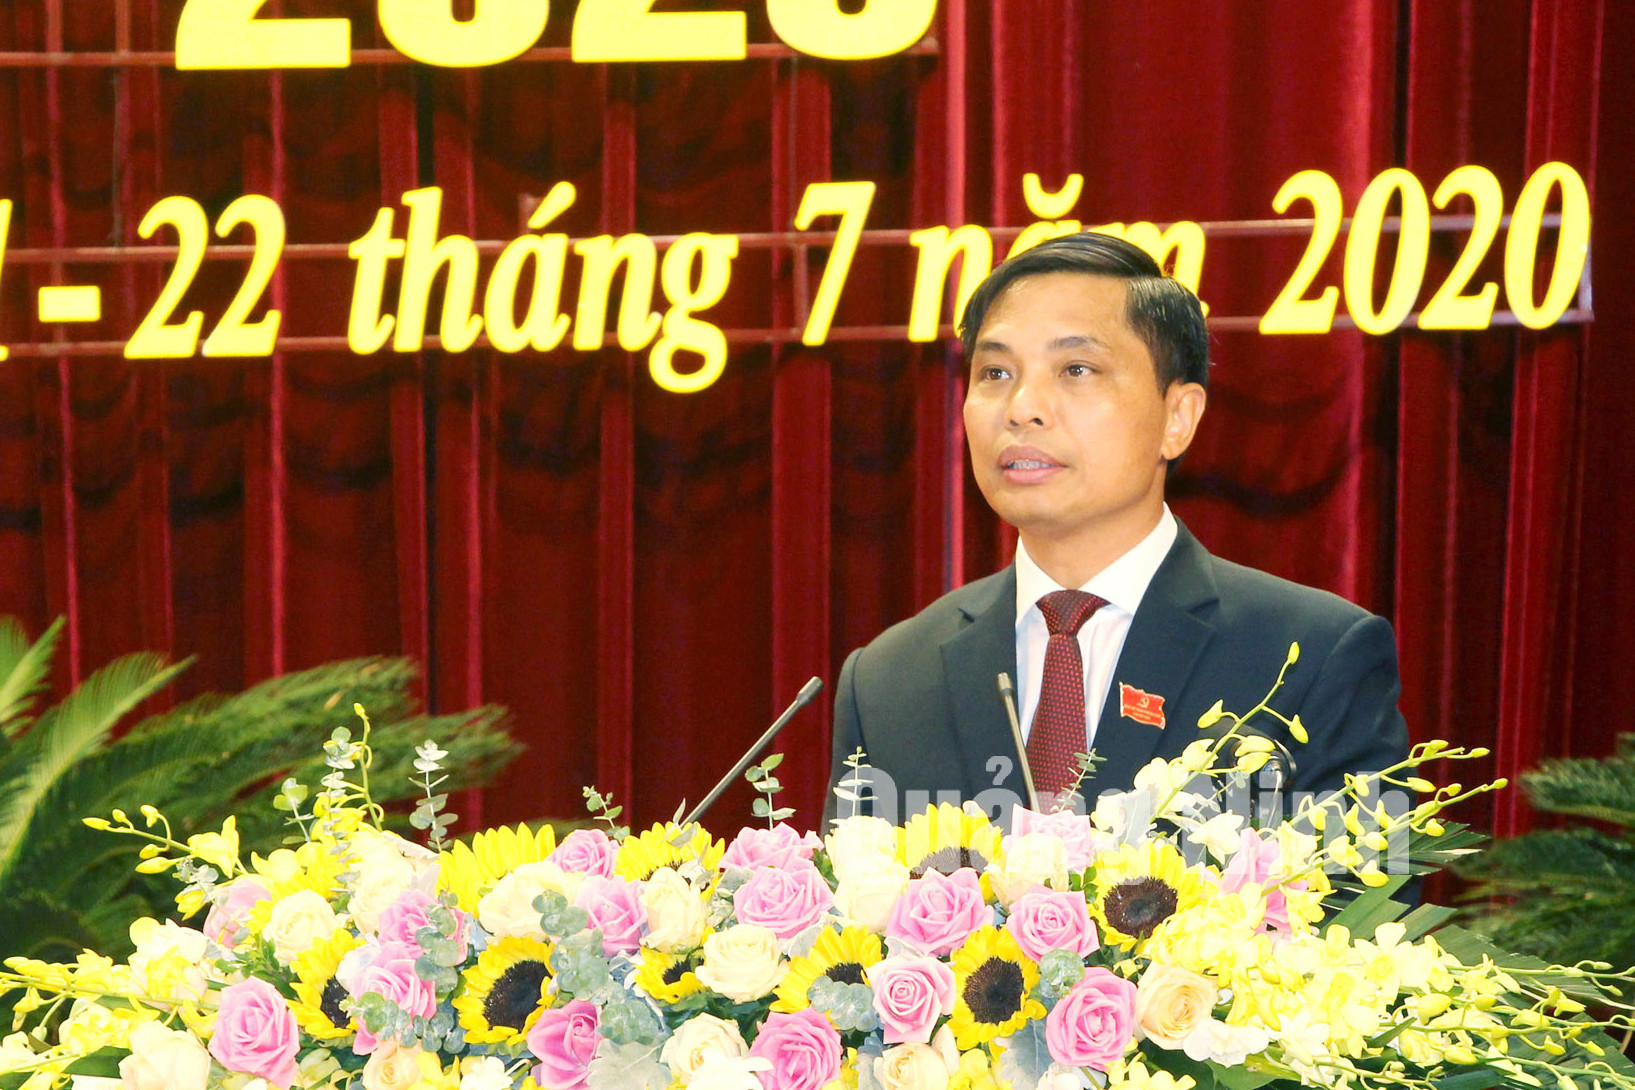 Đồng chí Vũ Văn Diện, Bí thư Thành ủy Hạ Long trình bày báo cáo chính trị tại đại hội (7-2020). Ảnh: Thu Chung